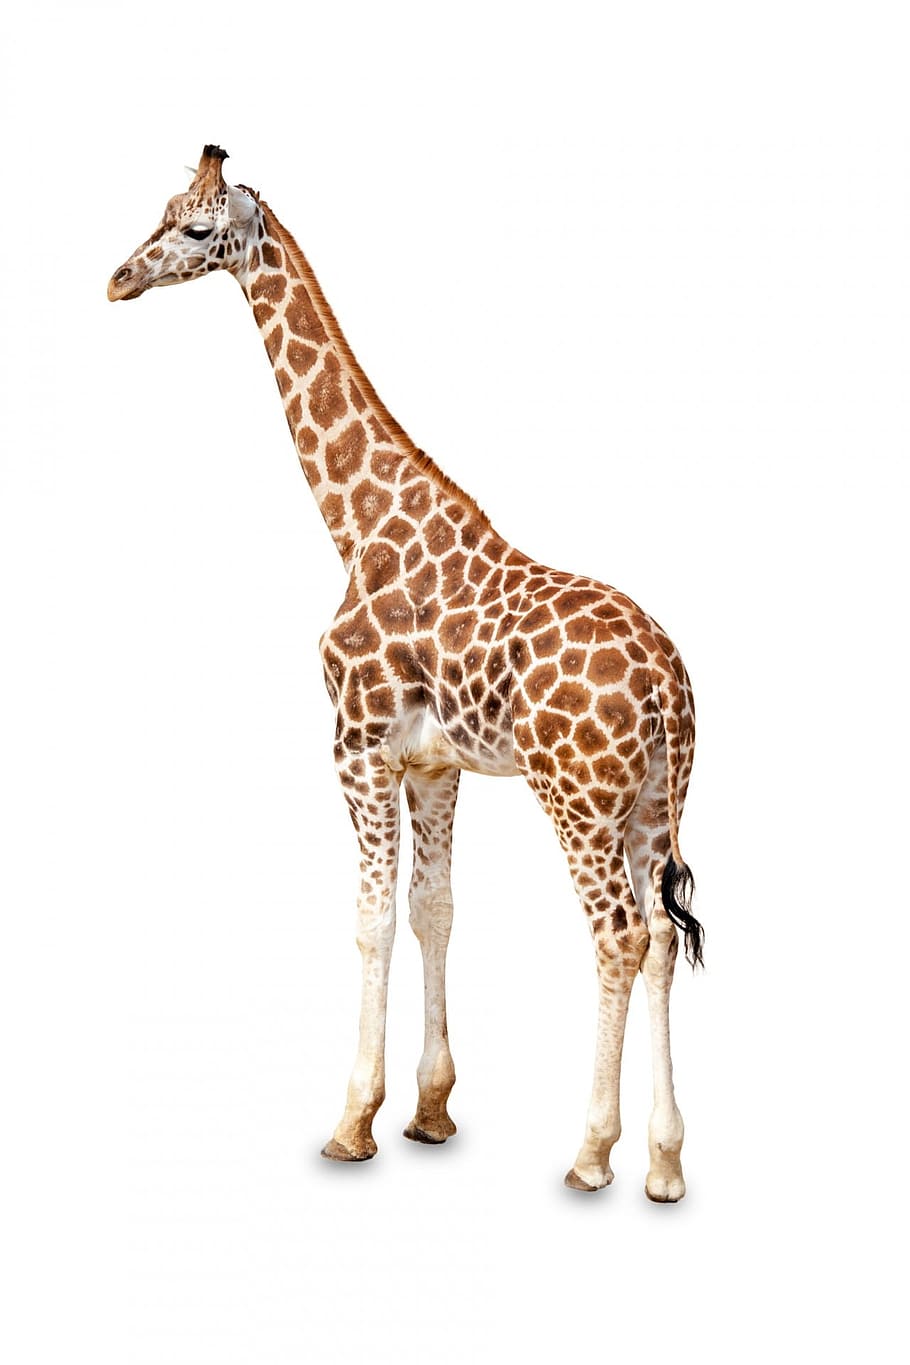 jirafa adulta, áfrica, africano, animal, grande, marrón, de pie, lindo, orejas, cara